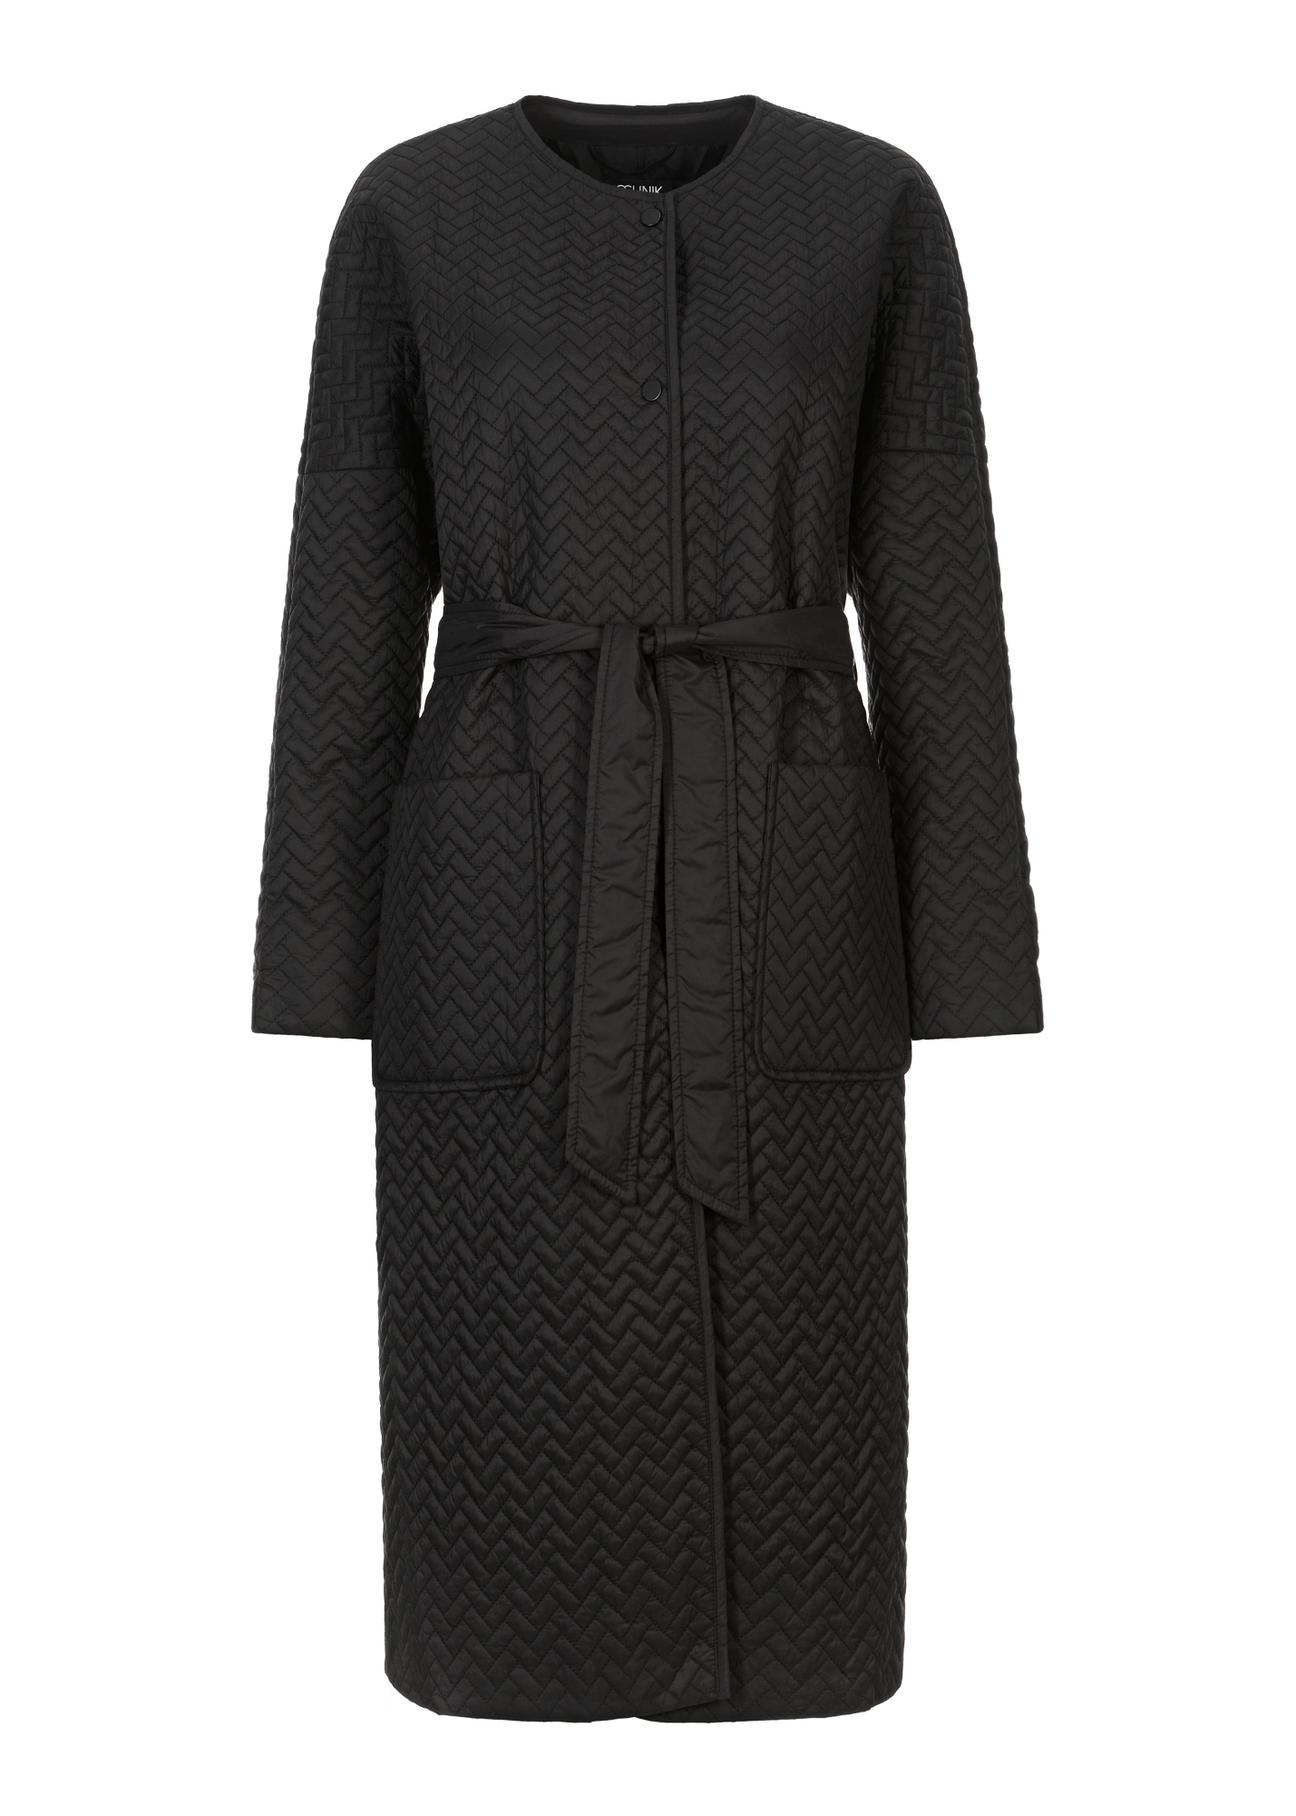 Czarny płaszcz damski oversize z paskiem KURDT-0437-99(W23)